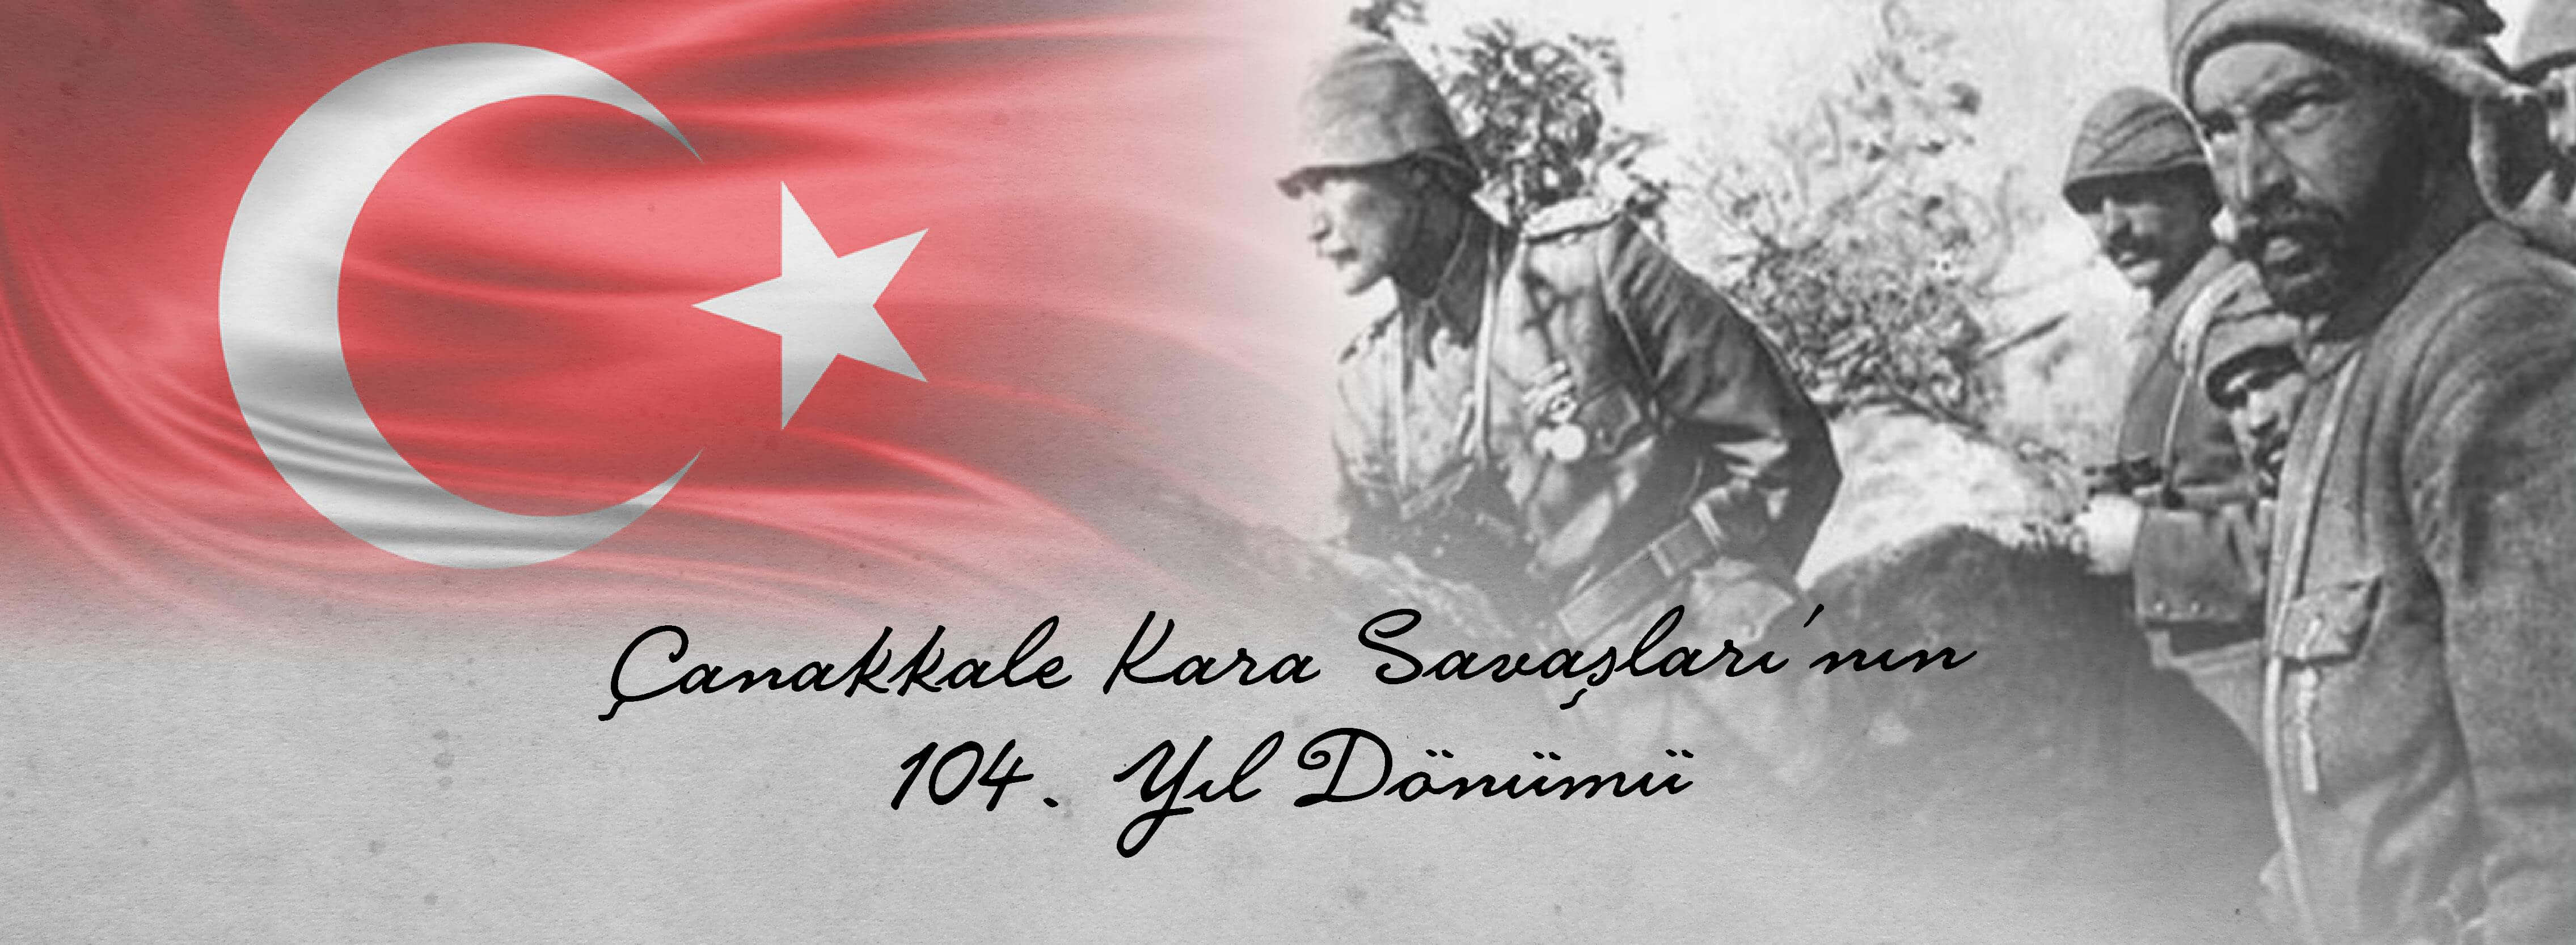 Belediye Başkanı Sayın Ülgür Gökhan'ın Çanakkale Kara Savaşları'nın 104. Yıldönümü Mesajı...